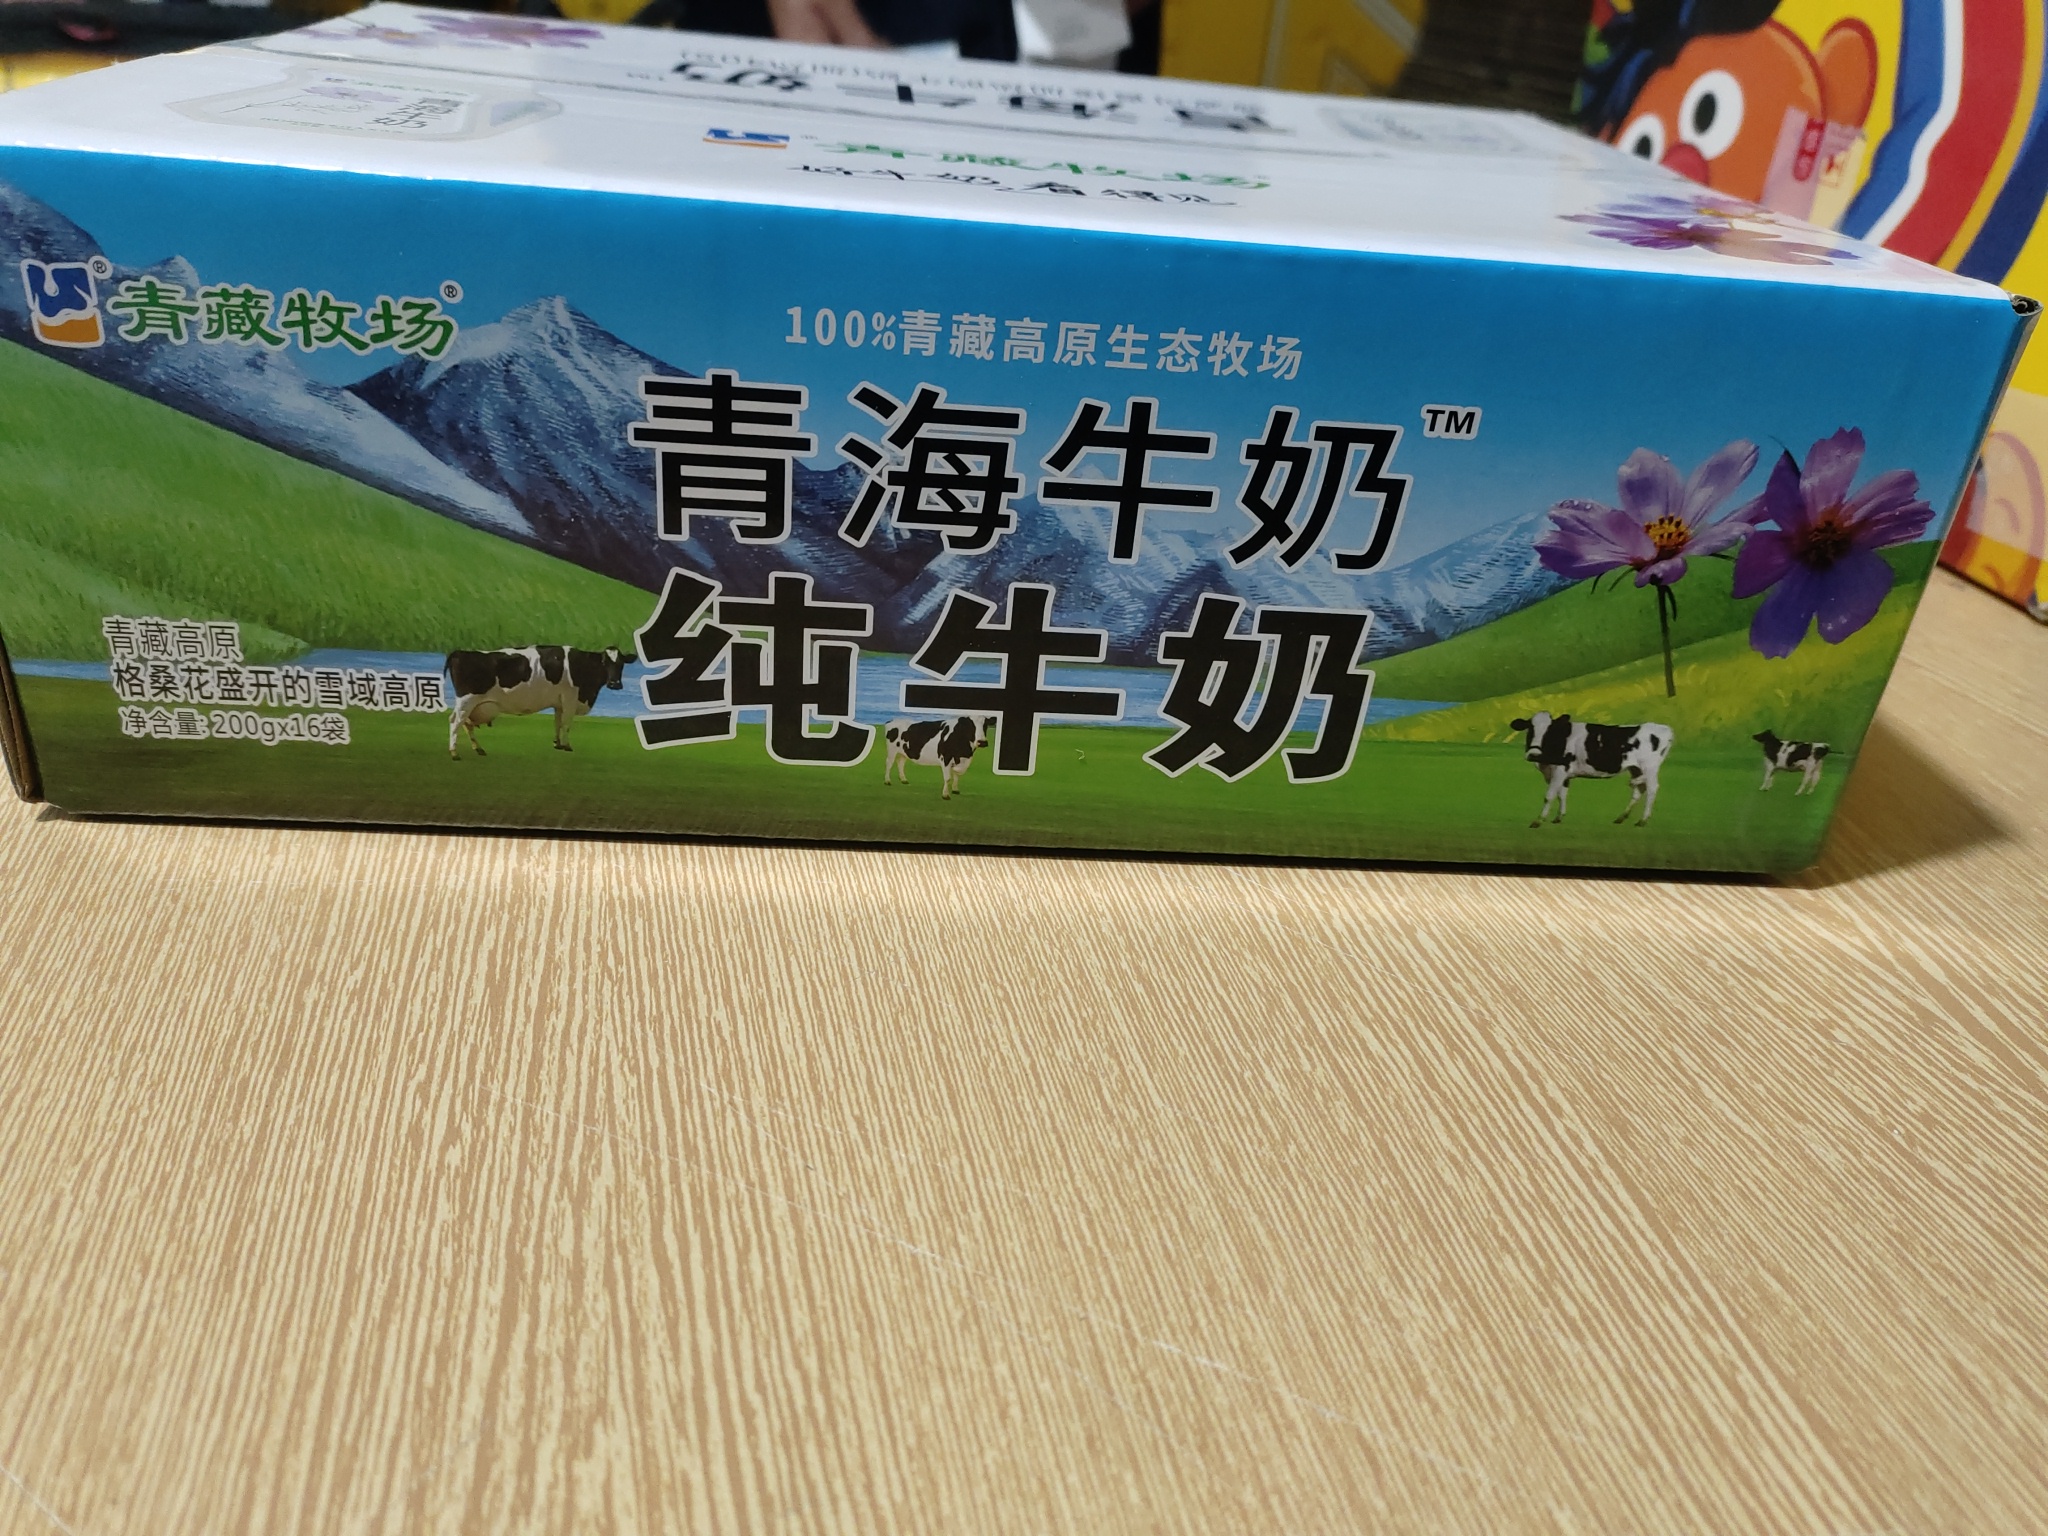 青海特产青藏牧场纯牛奶 200g180g儿童学生成人早餐奶透明袋高原